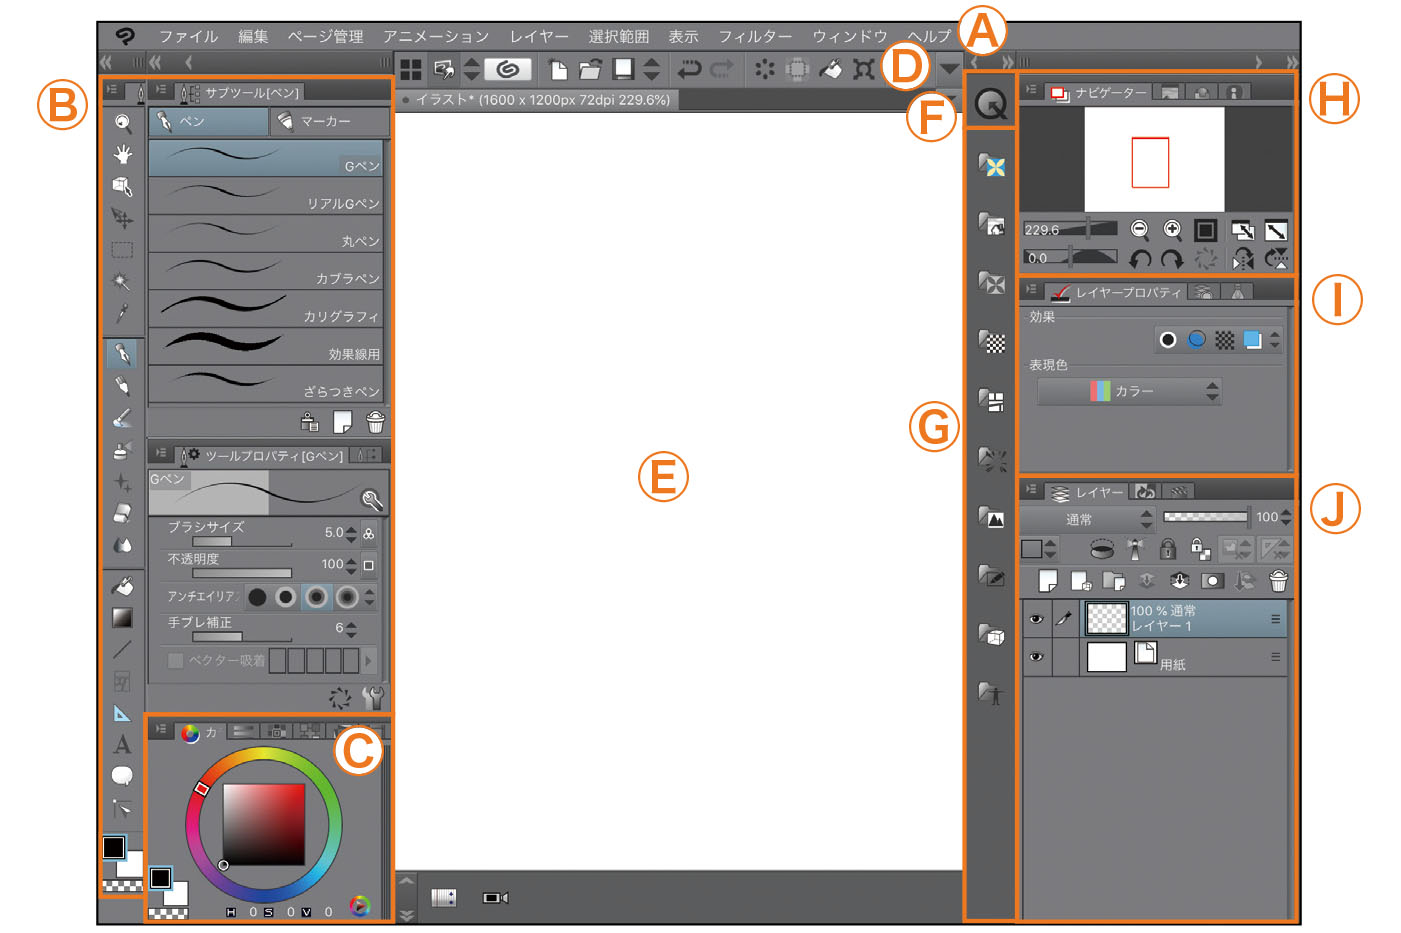 タブレットアプリならではのメニューレイアウトとuiのカスタマイズ Ipadではじめよう Clip Studio Paint 第2回 Pictures